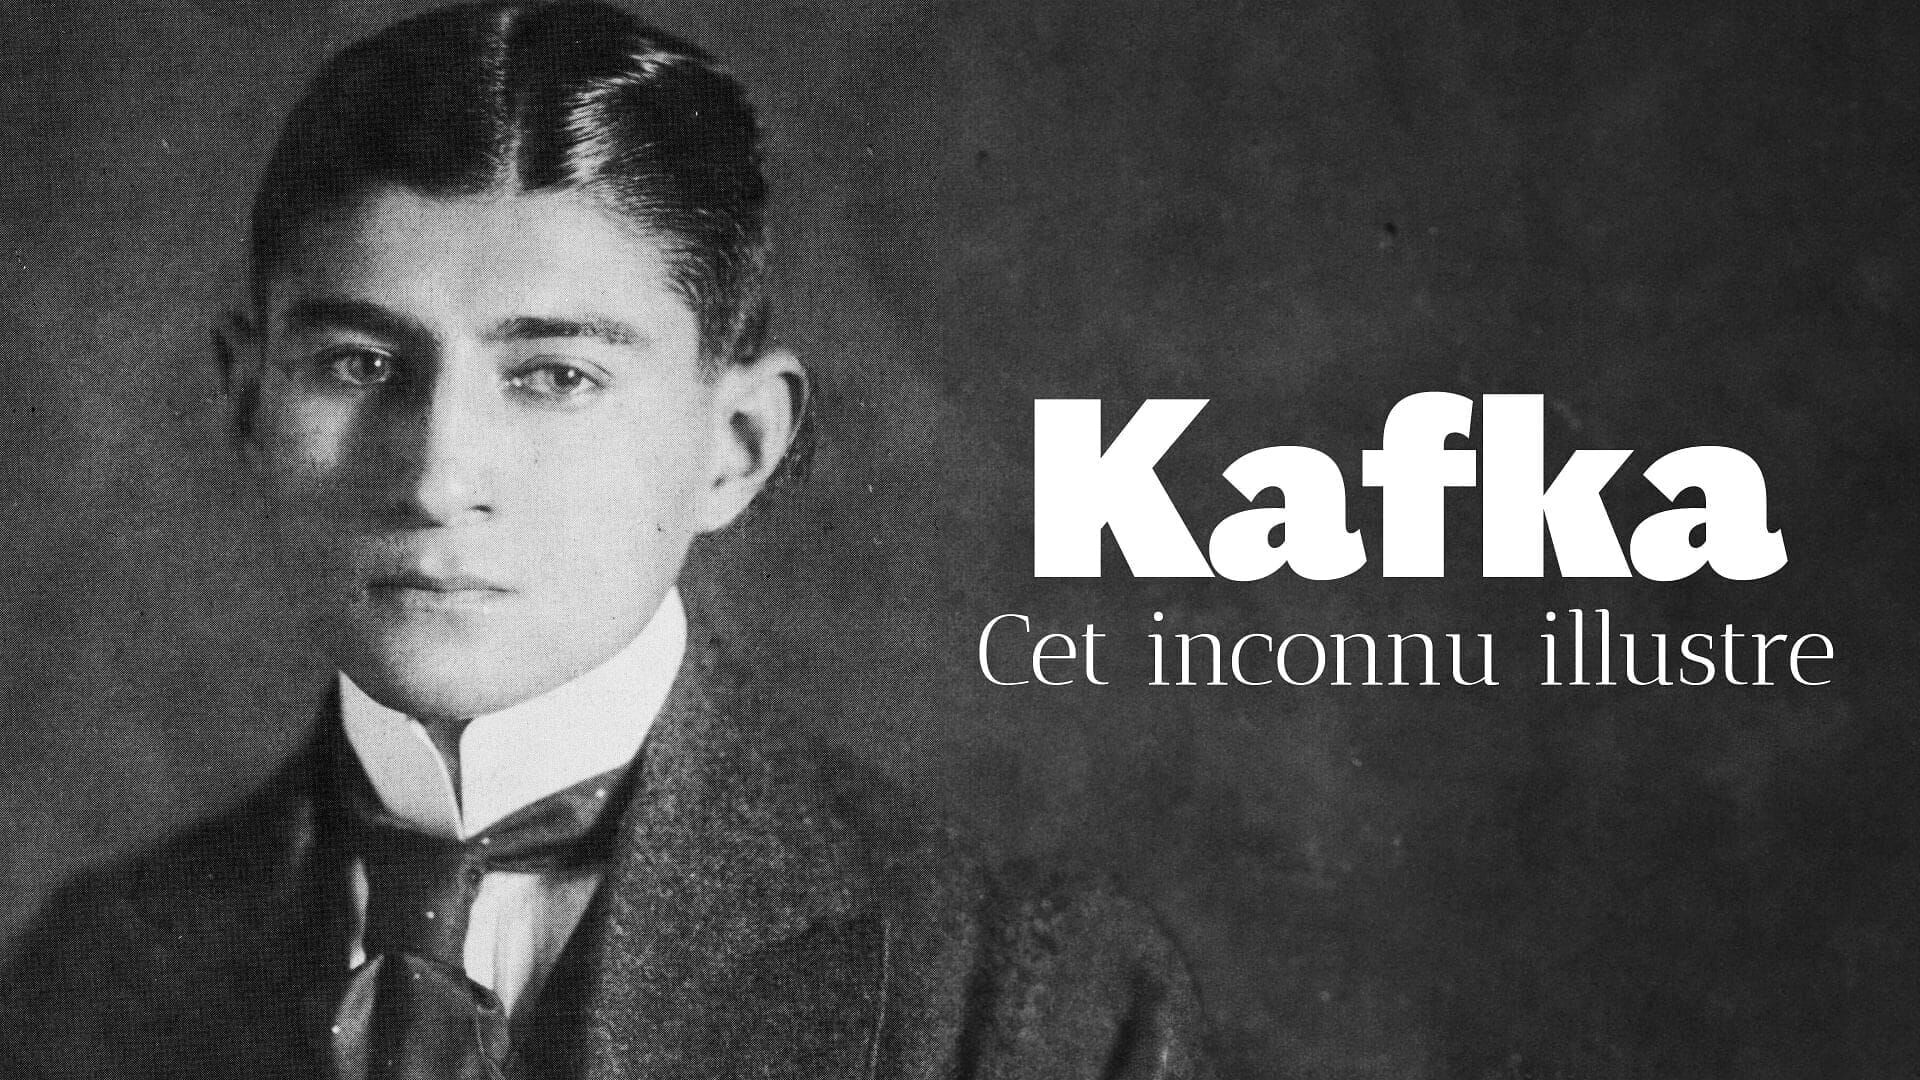 Kennen Sie Kafka?